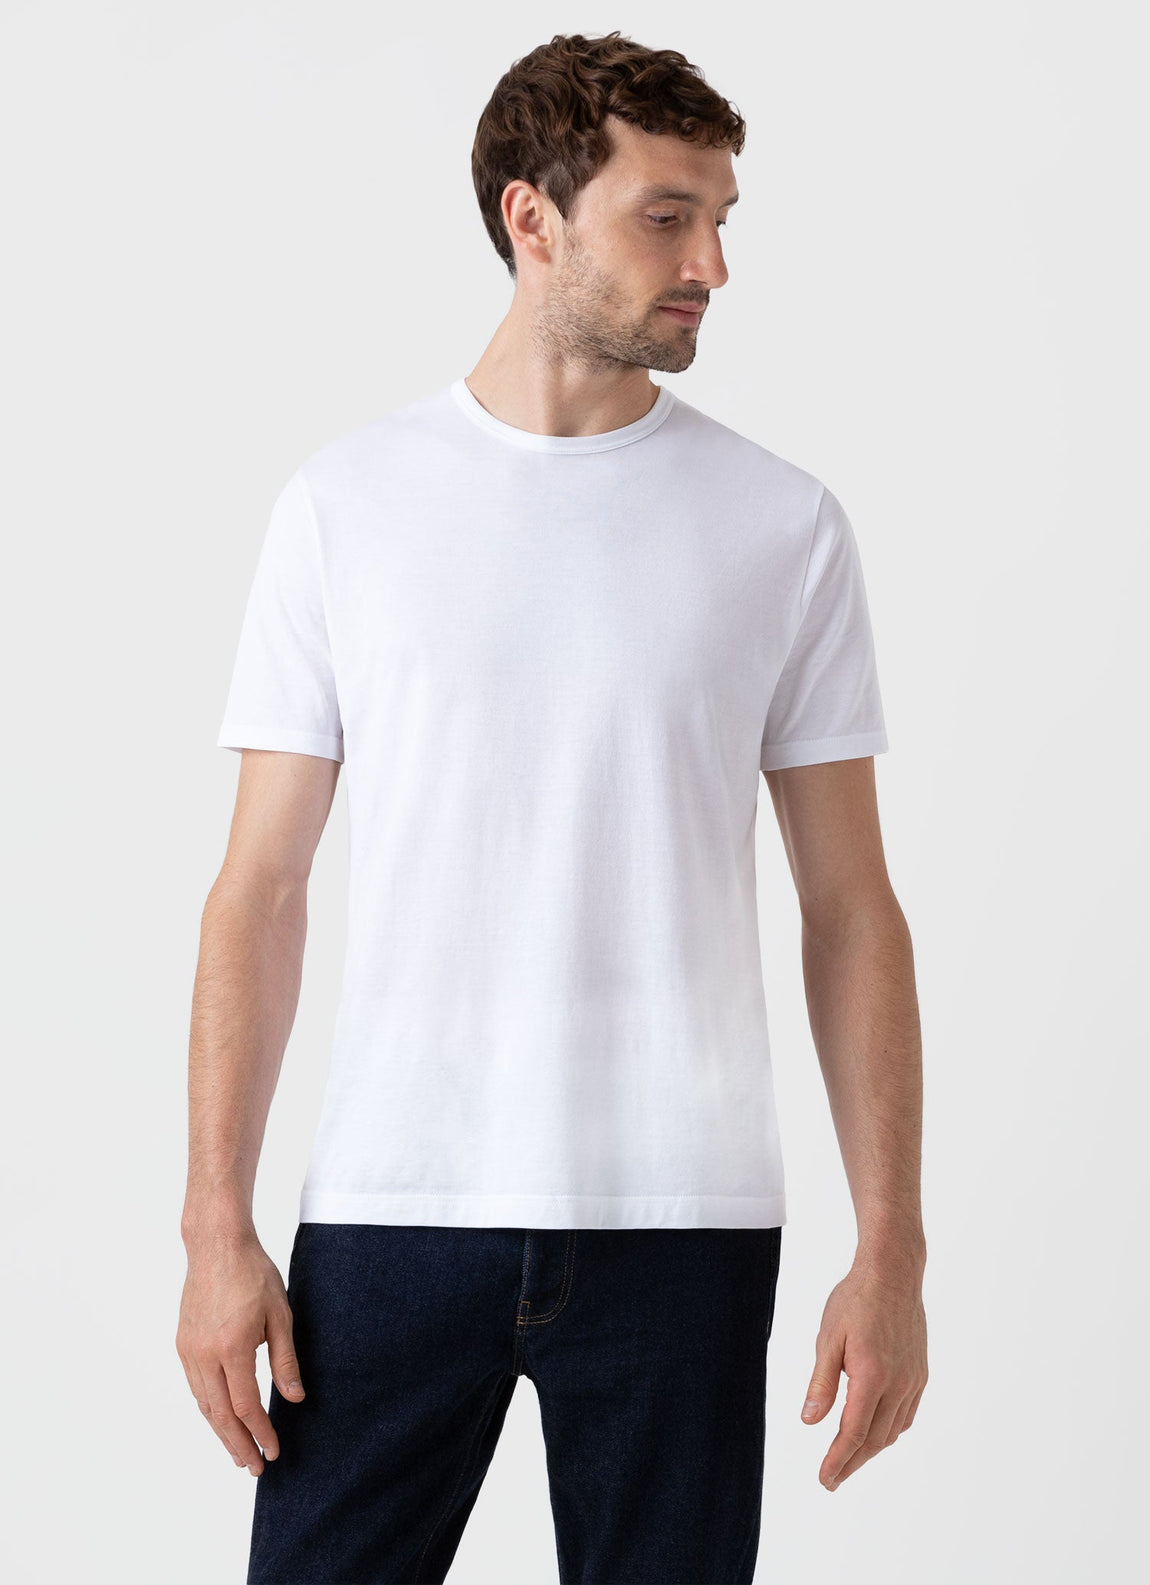 Men's Classic T-shirt in White | Sunspel